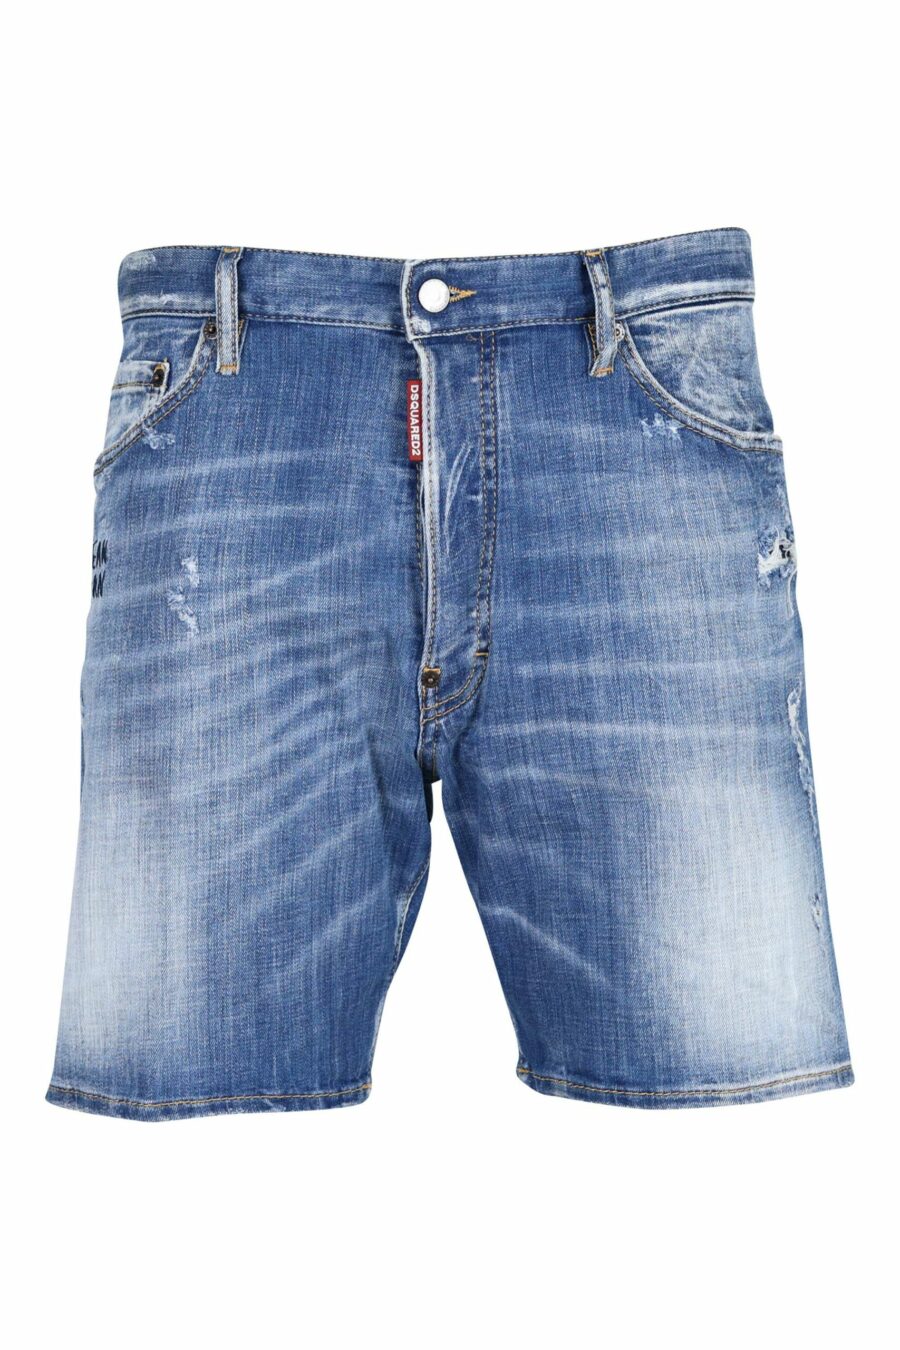 Blaue Denim-Shorts "marine short" - 8054148311445 skaliert